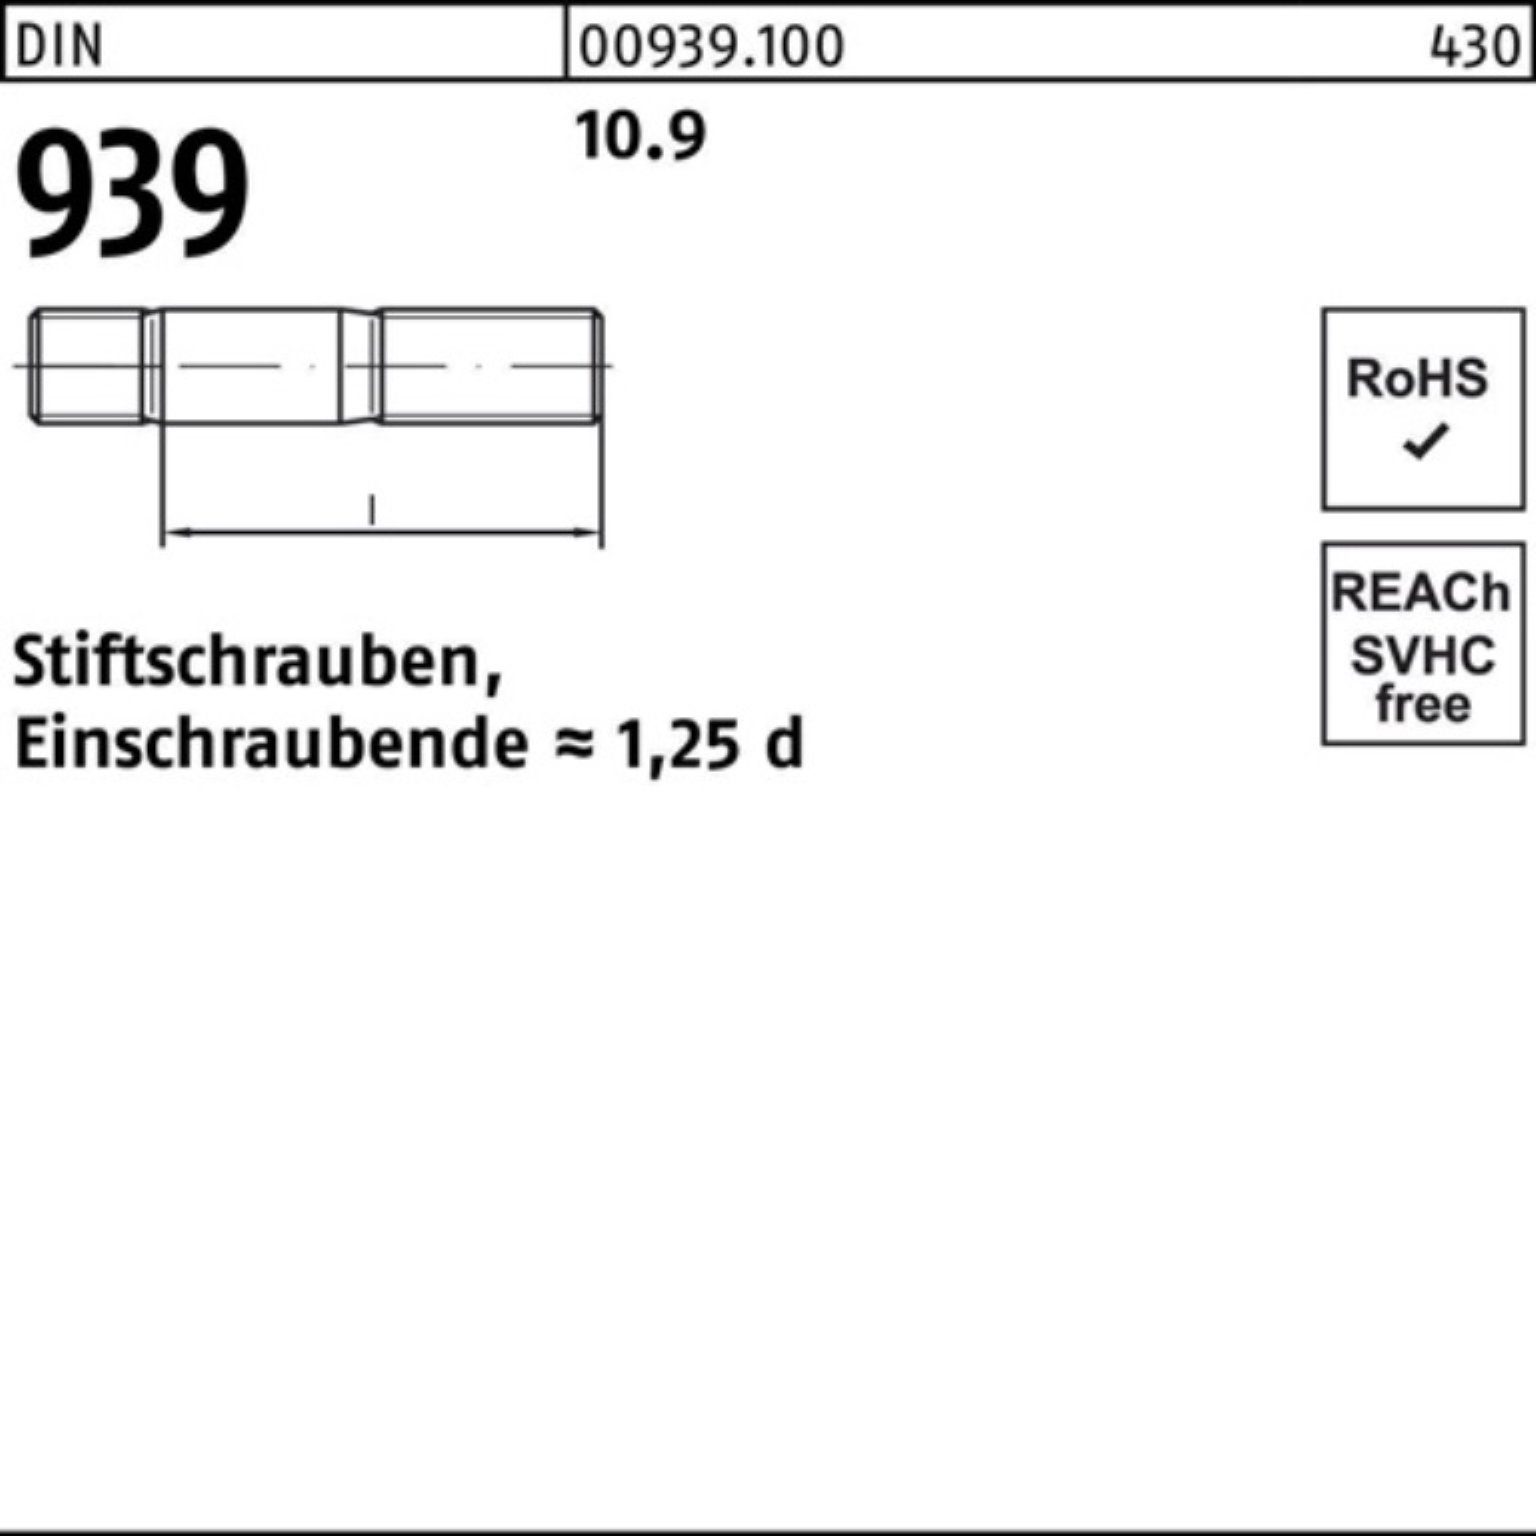 Reyher Stiftschraube 100er Pack 939 DIN 10.9 Einschraubende=1,25d Stiftschraube M12x 65 25